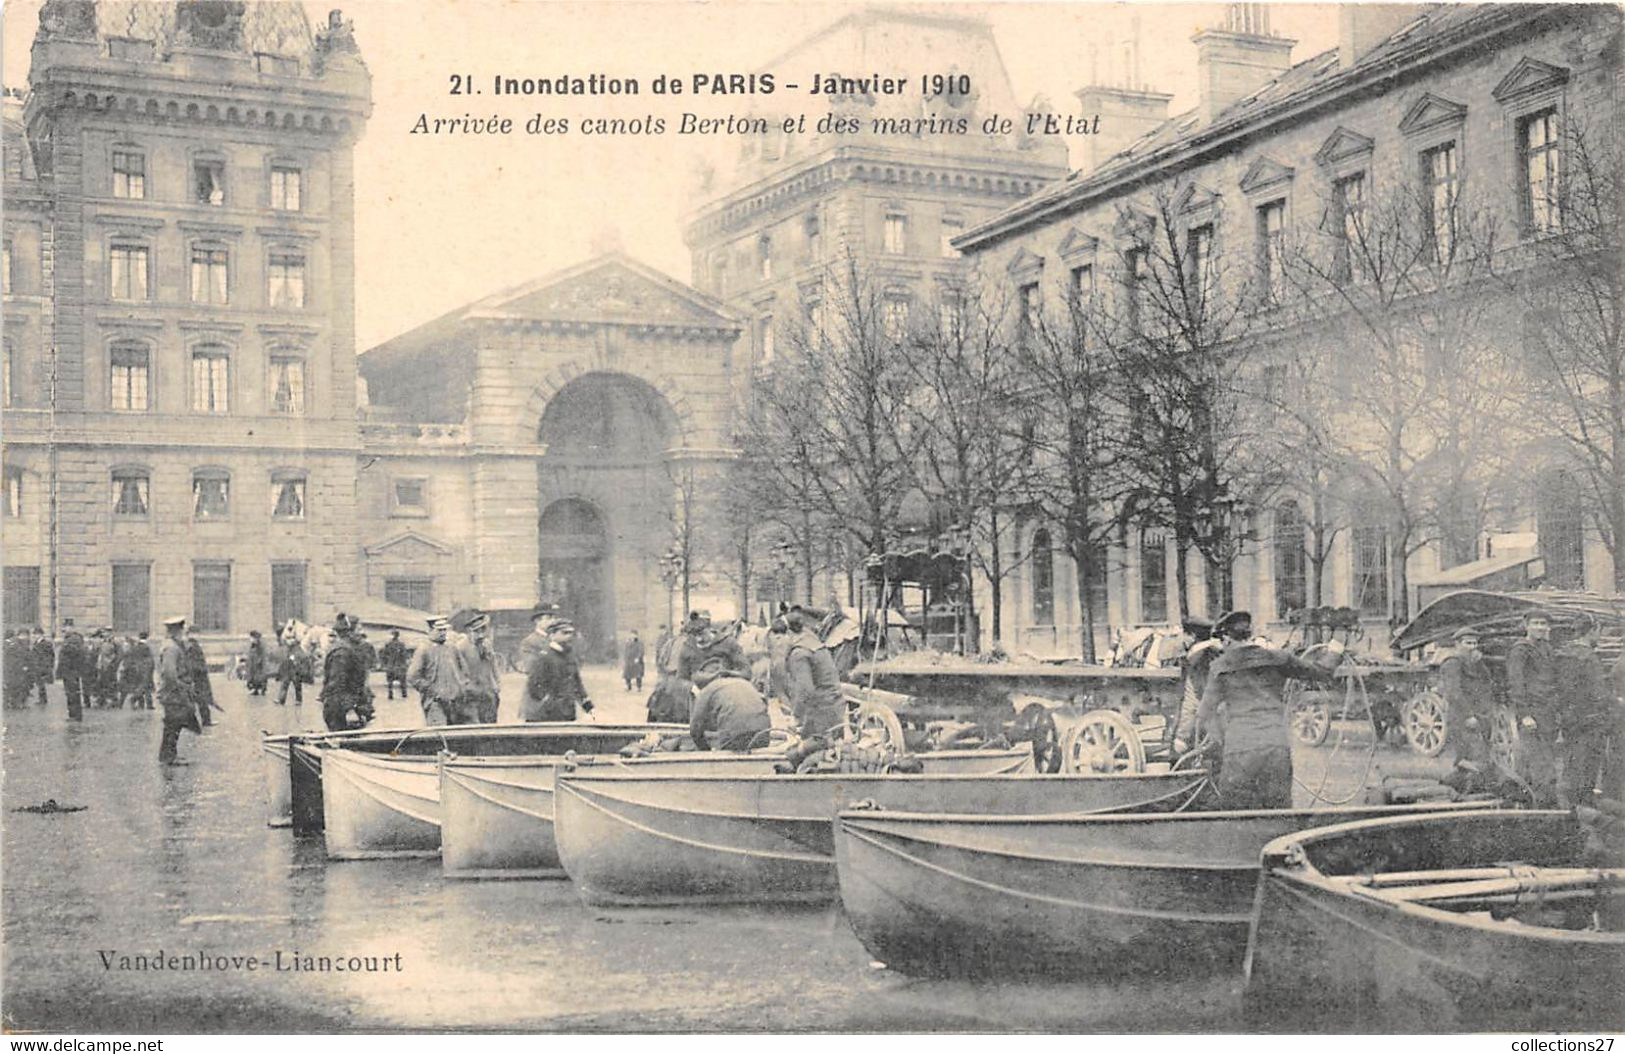 INONDATION DE PARIS , JANVIER 1910- ARRIVEE DES CANOTS BERTON ET DES MARINS DE L'ETAT - Überschwemmung 1910